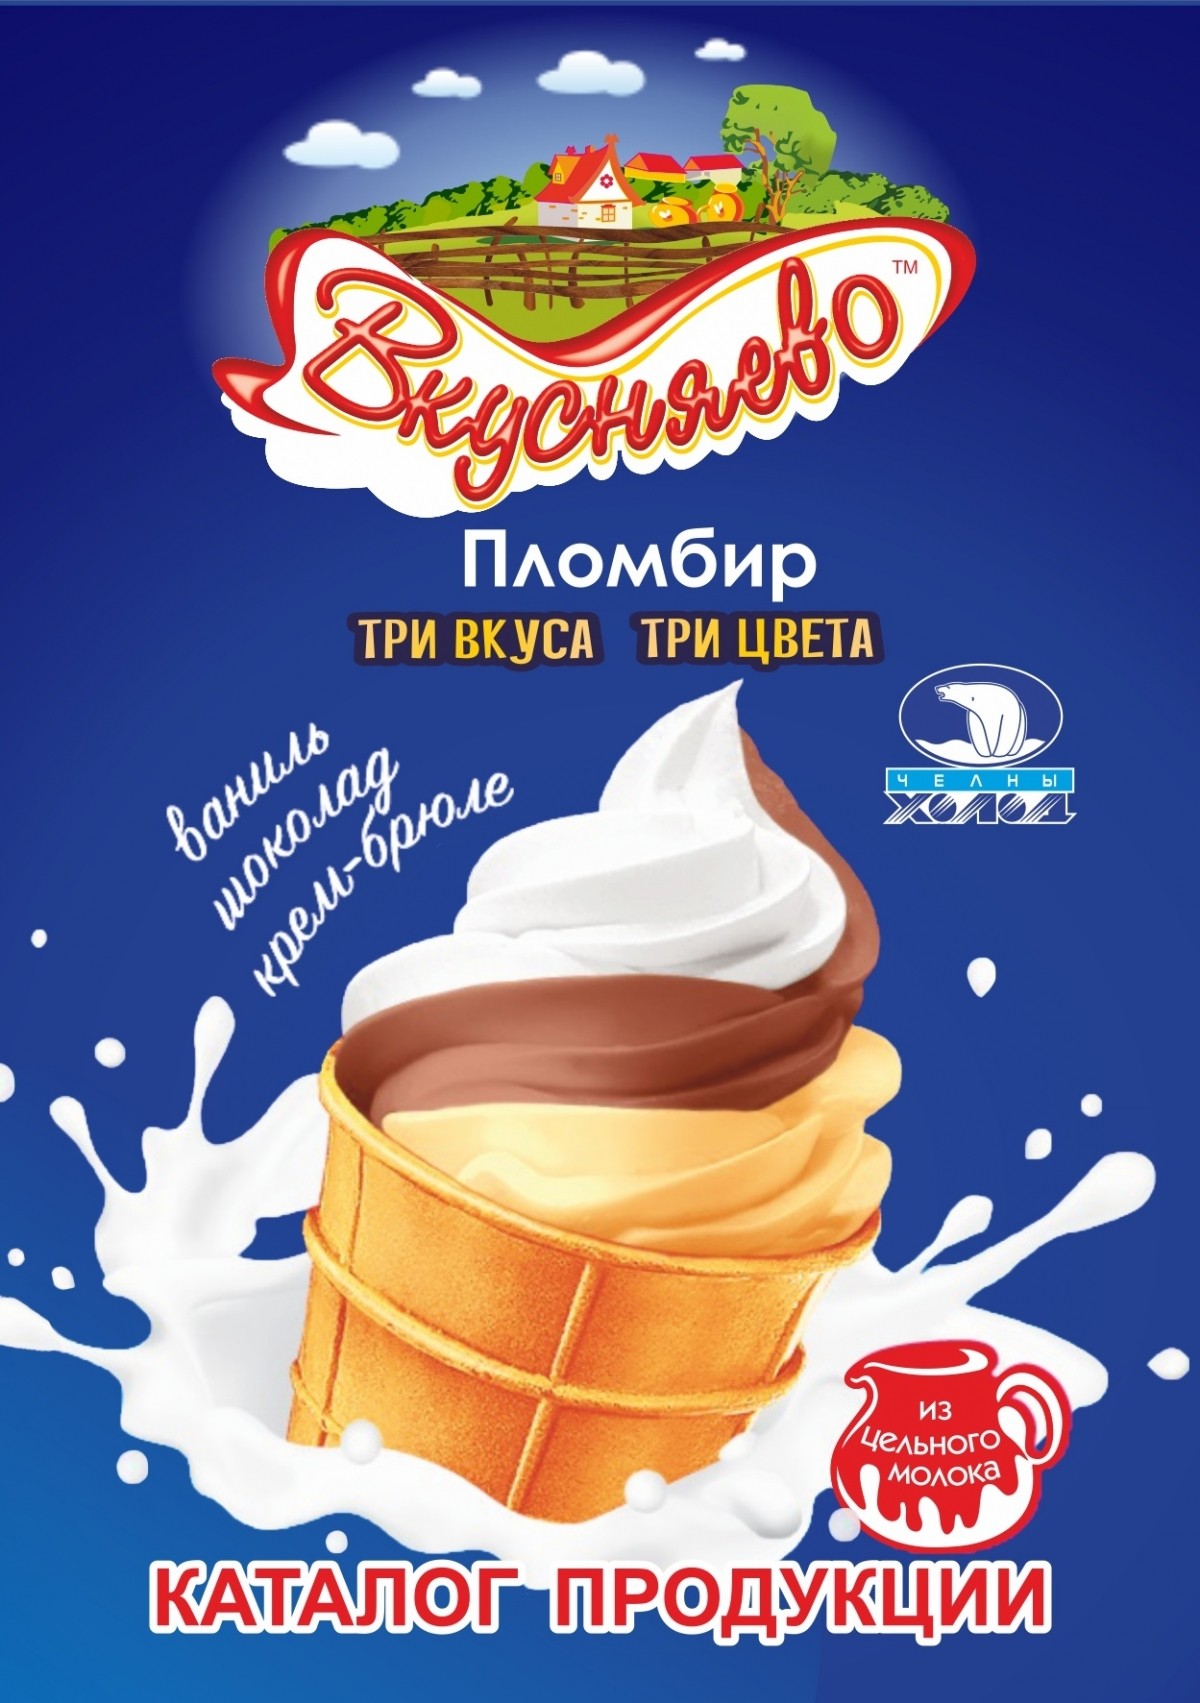 Каталог 2021 на мороженое ОАО "Челны Холод" размещен в разделе Продукция / Мороженое - Каталог продукции 